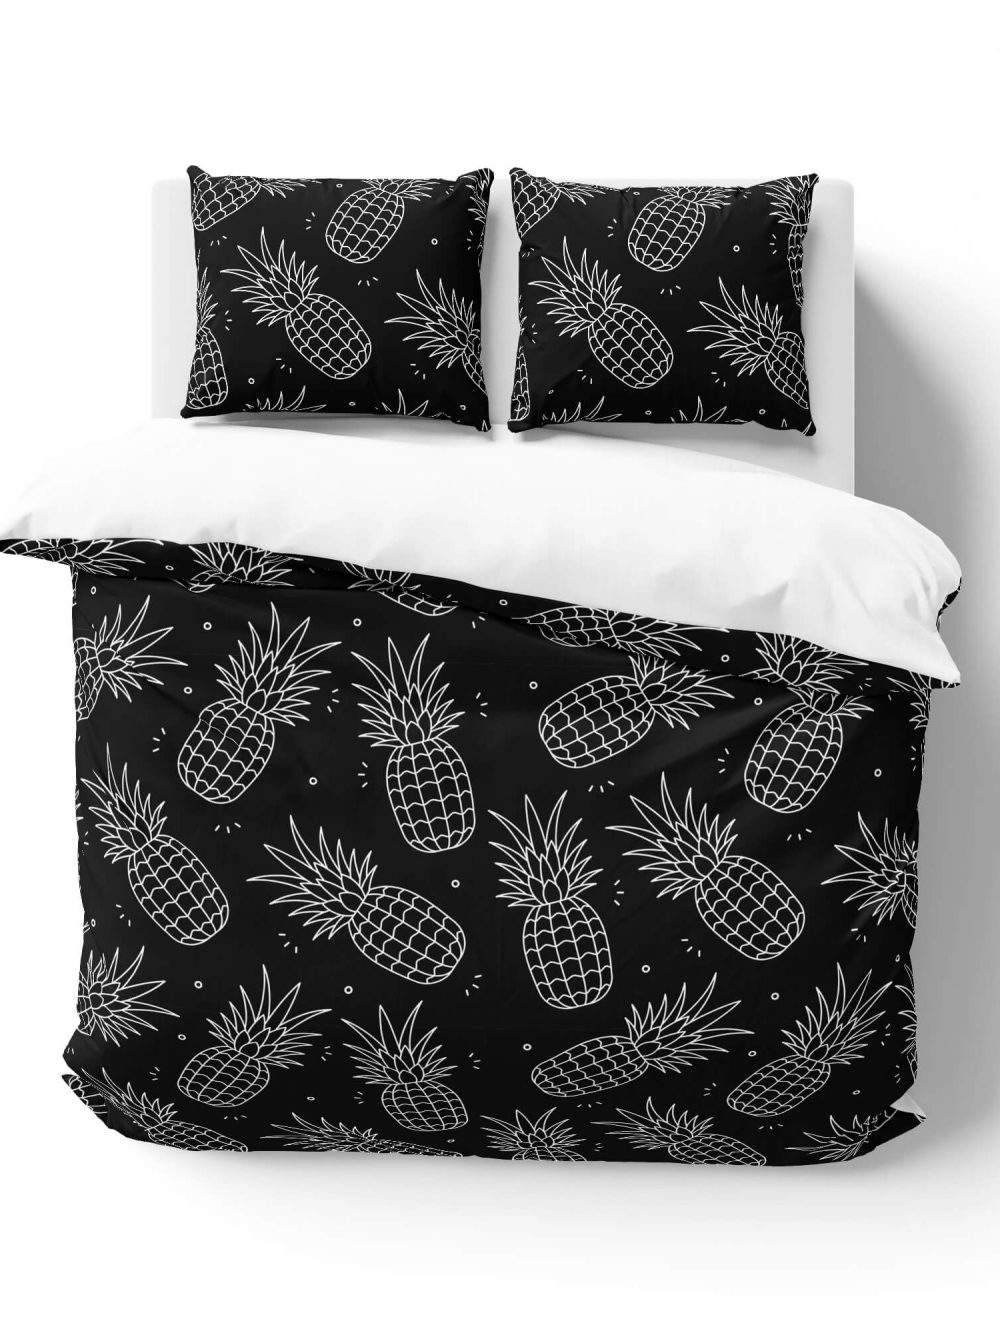 White & Black Pineapples Bedding Set